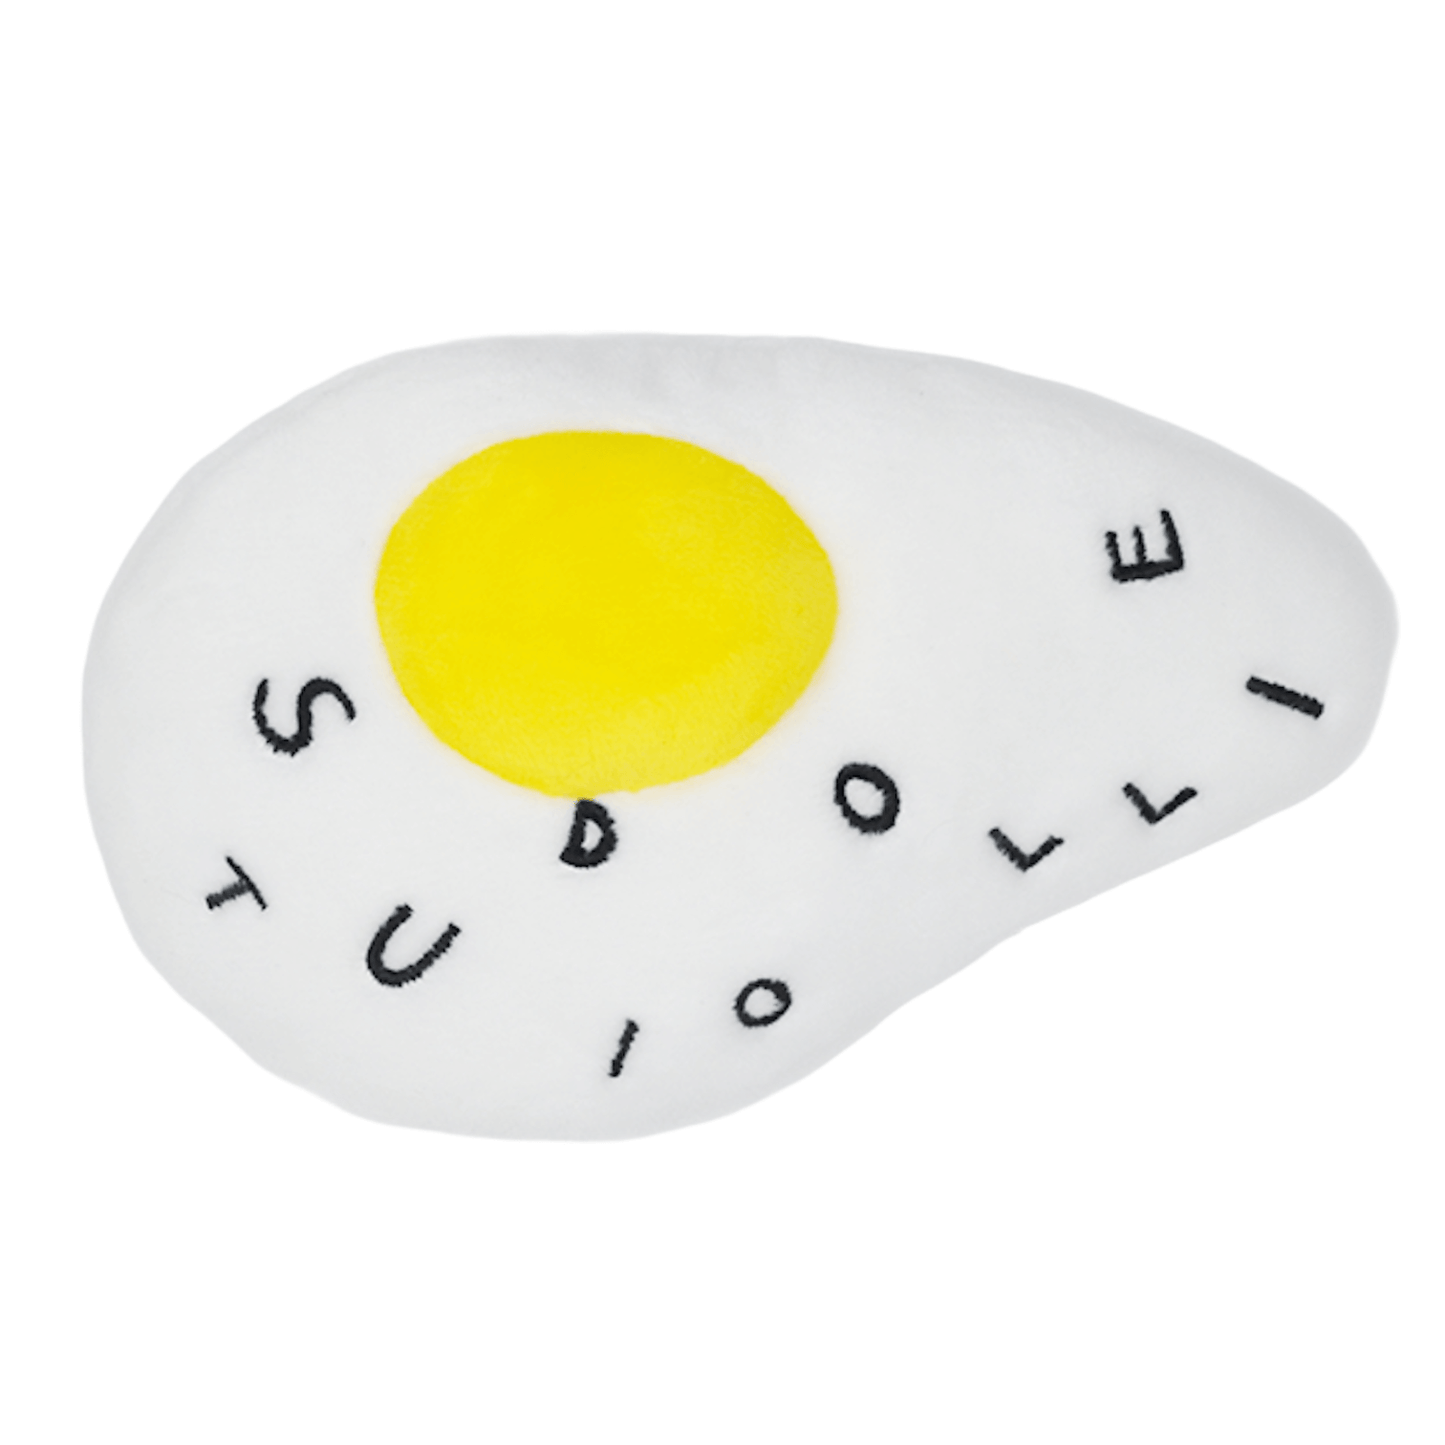 Sunny-Side Up Egg